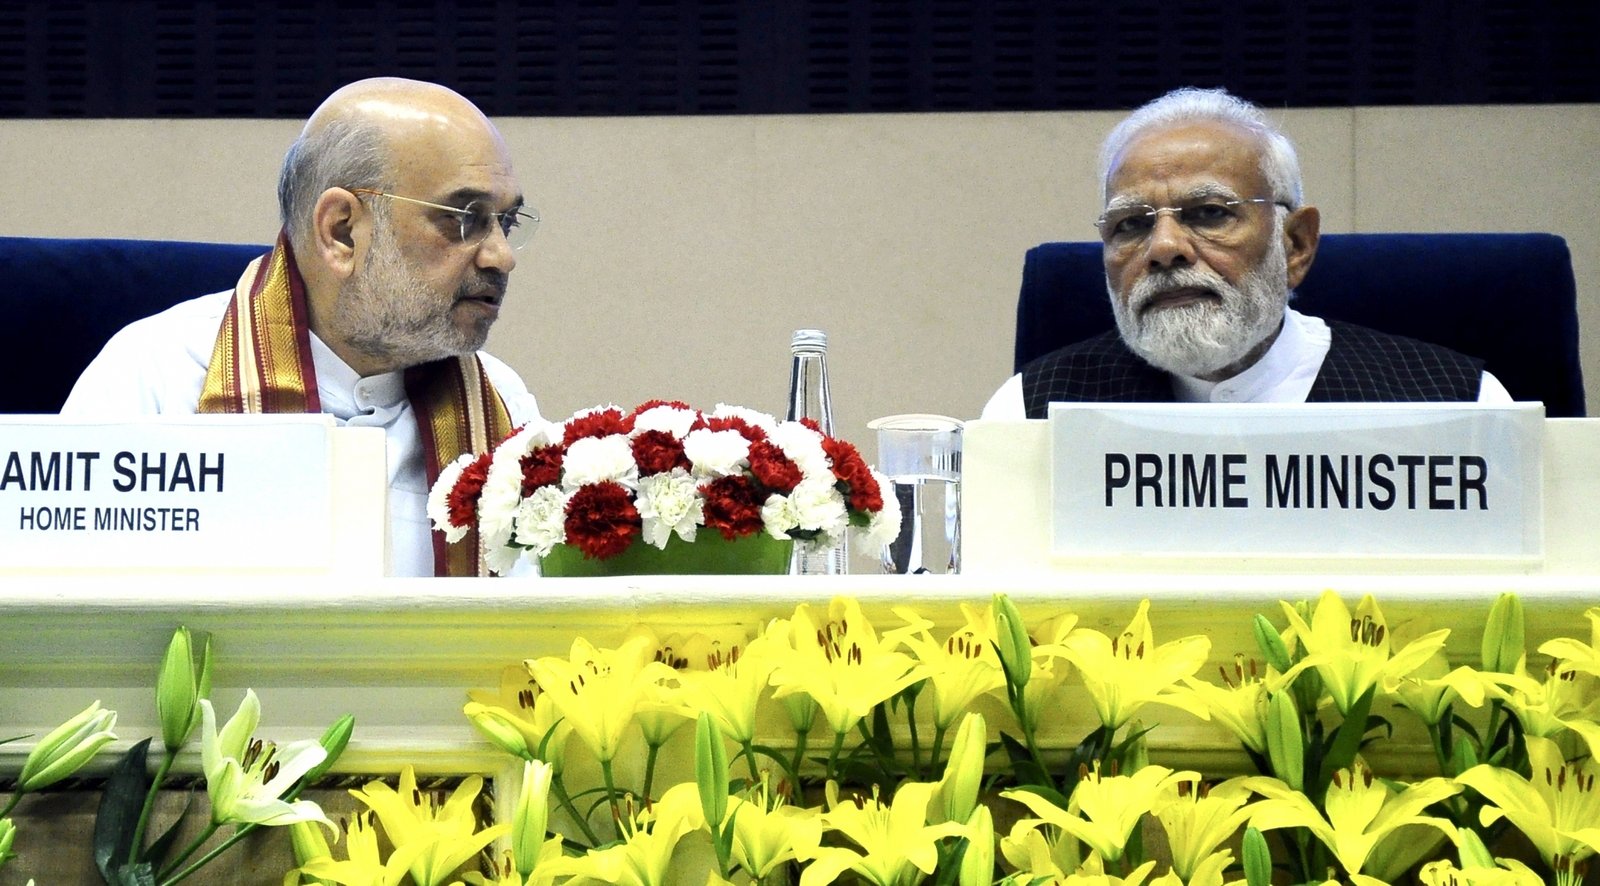 Prime Minister Narendra Modi and HM Shah